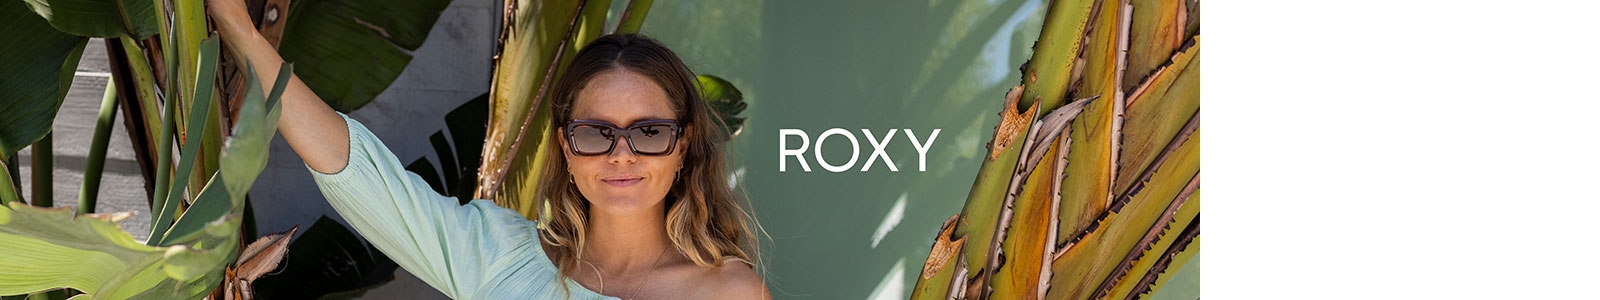 Image d'une femme bronzé portant des lunettes de soleil Roxy